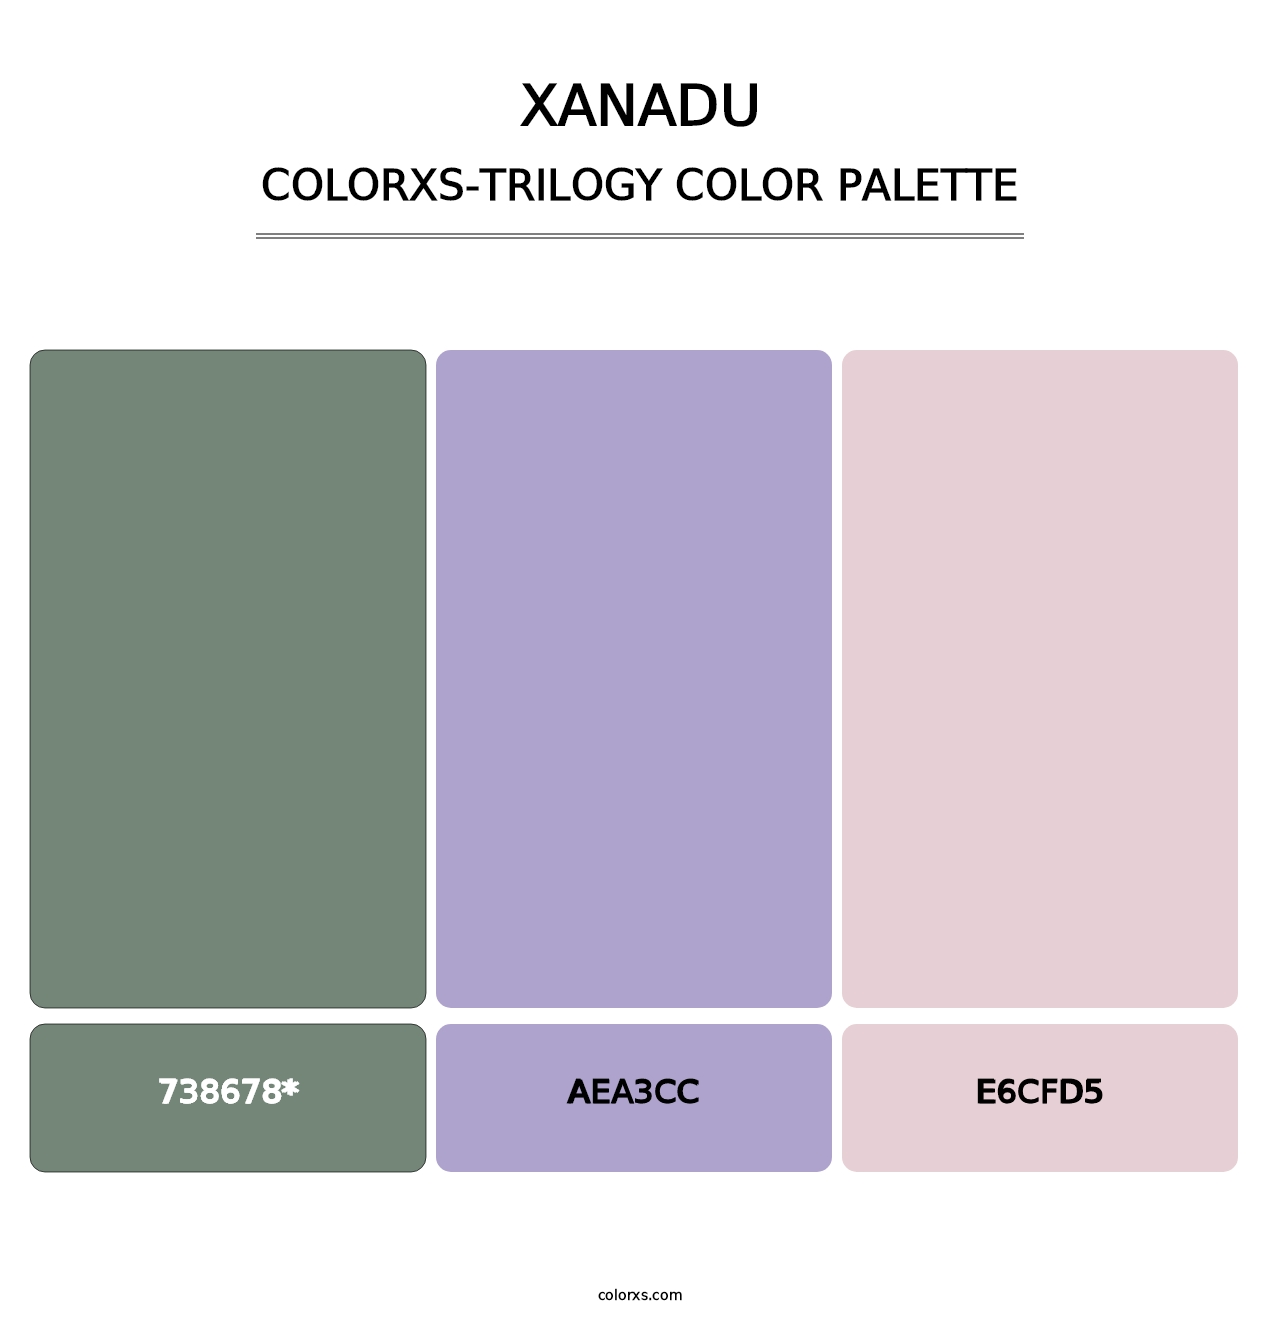 Xanadu - Colorxs Trilogy Palette